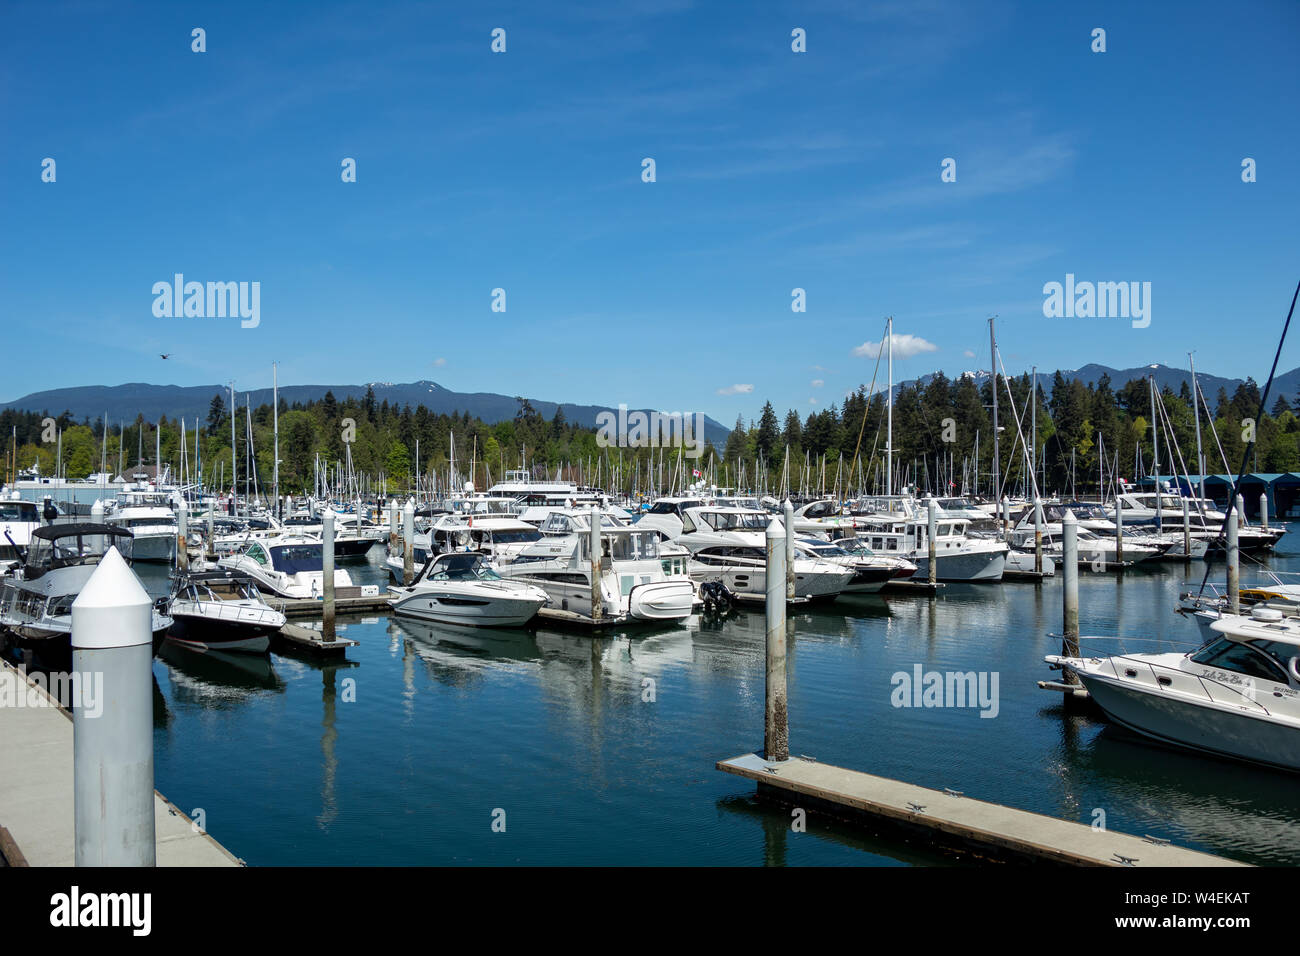 Il Bayshore West Marina ha visto pieno di barche e yacht nel centro di Vancouver, BC vicino a Stanley Park in una splendida giornata primaverile. Foto Stock